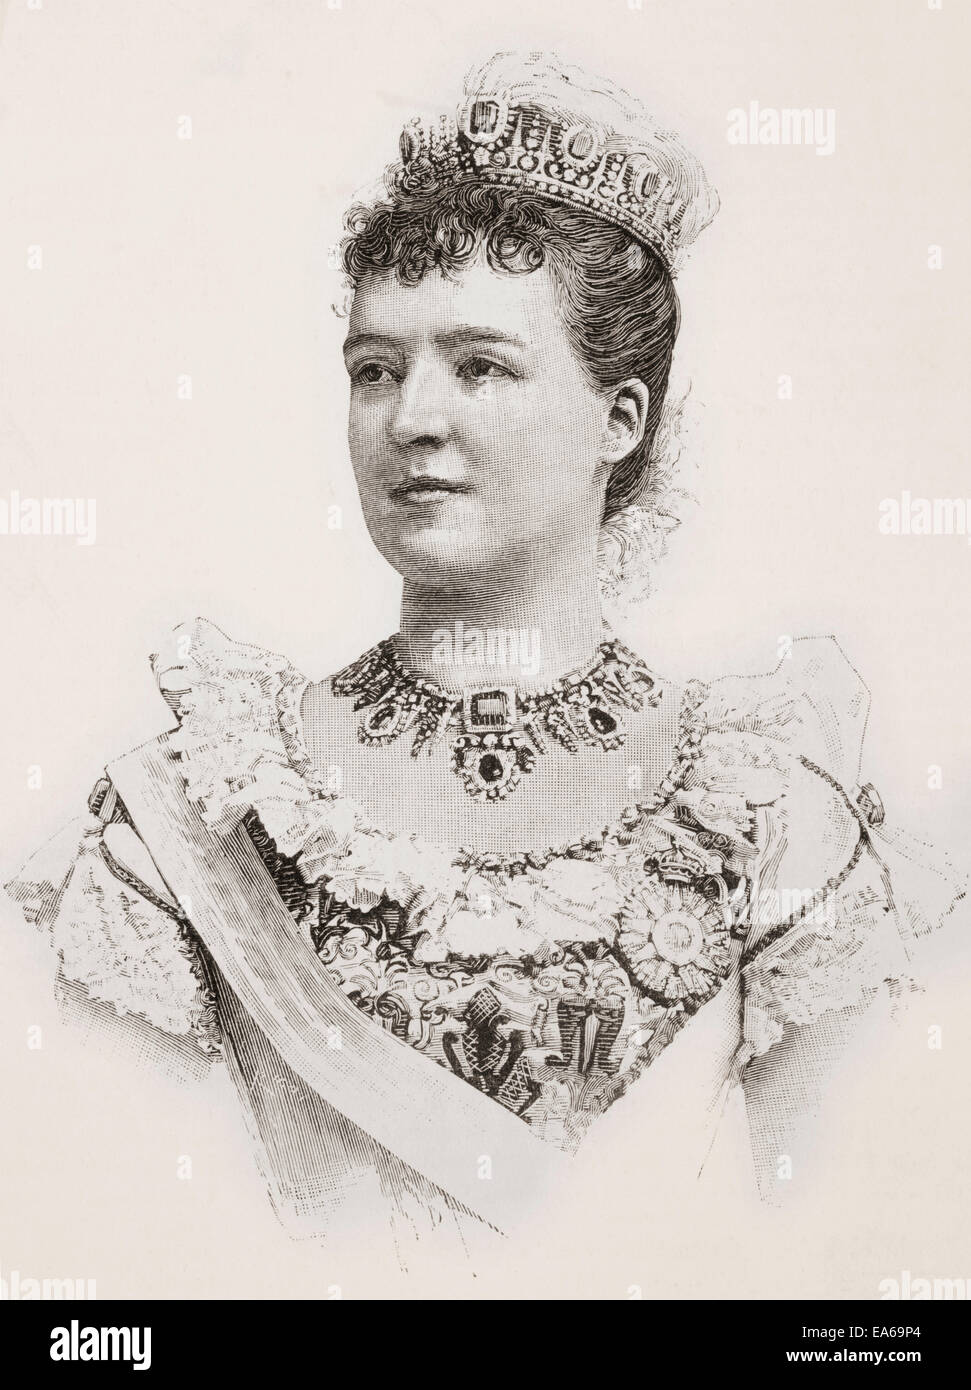 La principessa Amélie di Orléans, 1865 - 1951. Ultima regina consorte del Portogallo e del Algarves come la moglie di Carlos I. Foto Stock